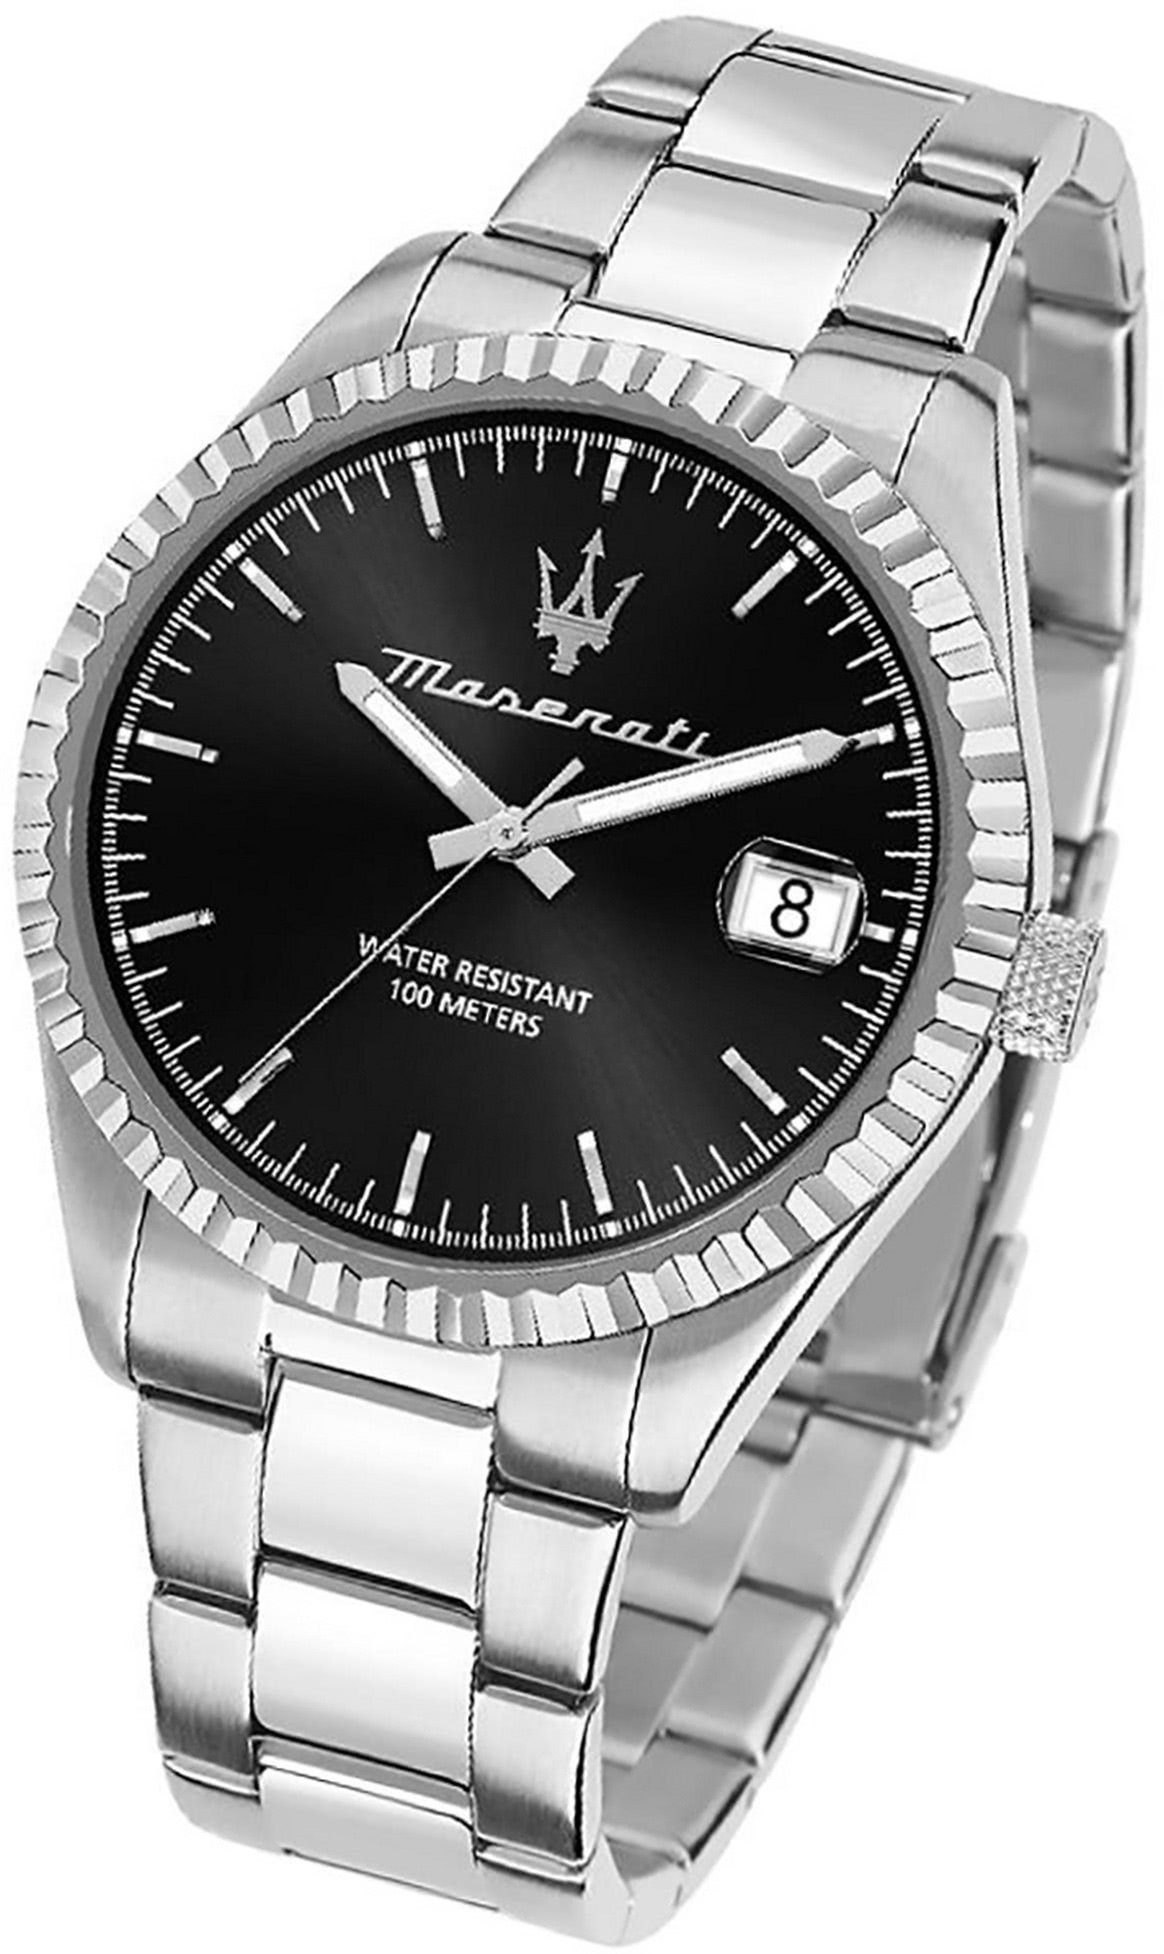 groß Armband-Uhr, Edelstahl Maserati (ca. Herrenuhr 43mm) MASERATI Edelstahlarmband, rundes Quarzuhr schwarz Gehäuse,